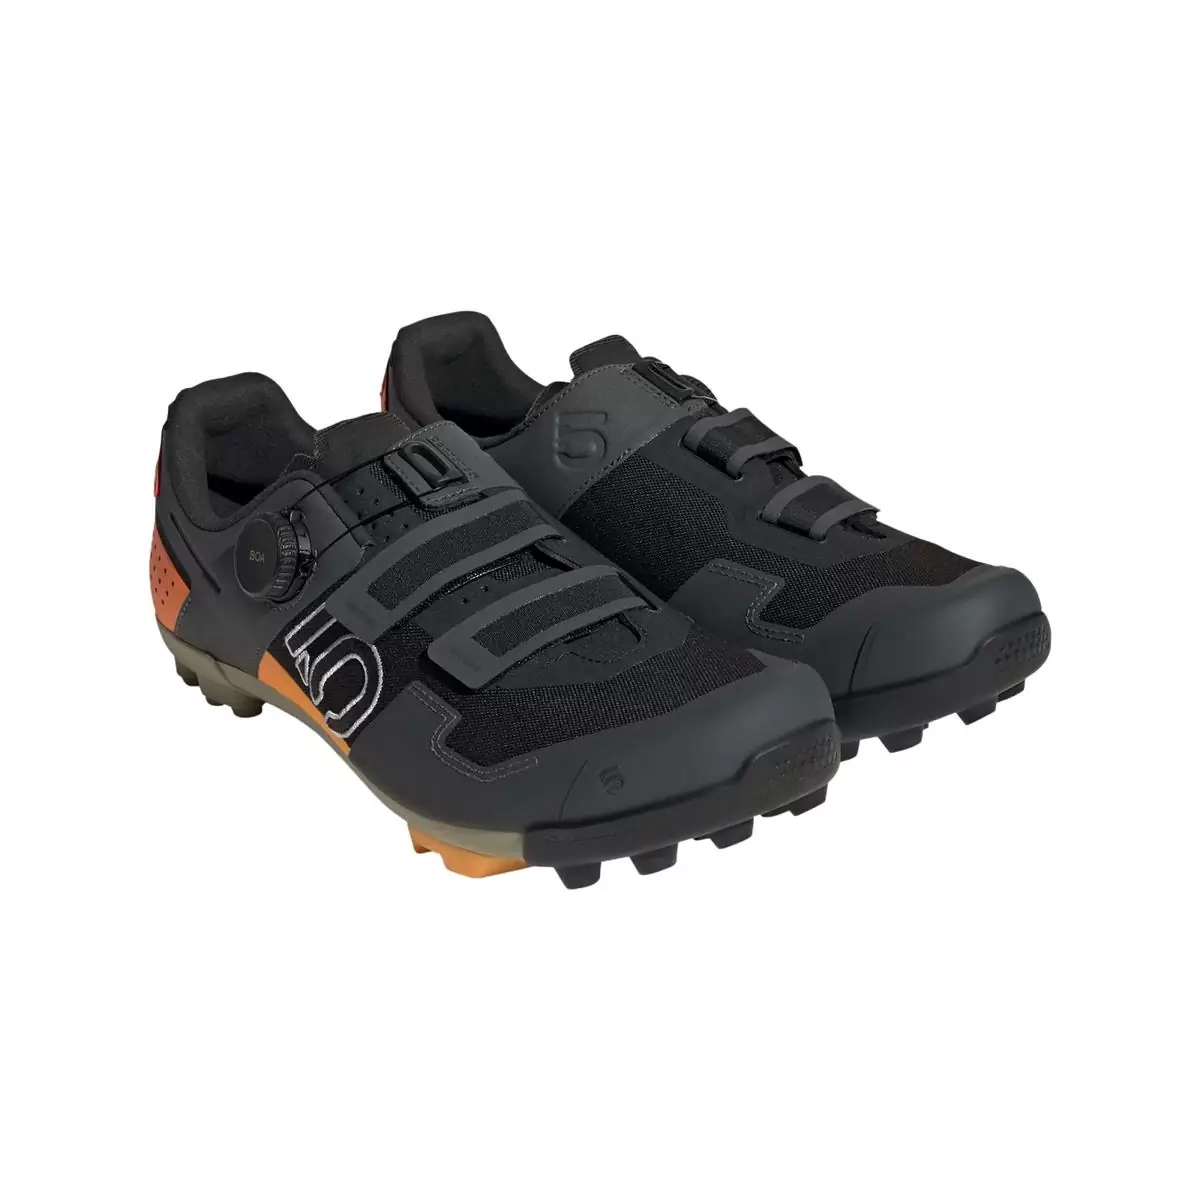 Clip 5.10 Kestrel Boa MTB Shoes Black/Orange Size 41.5 #1